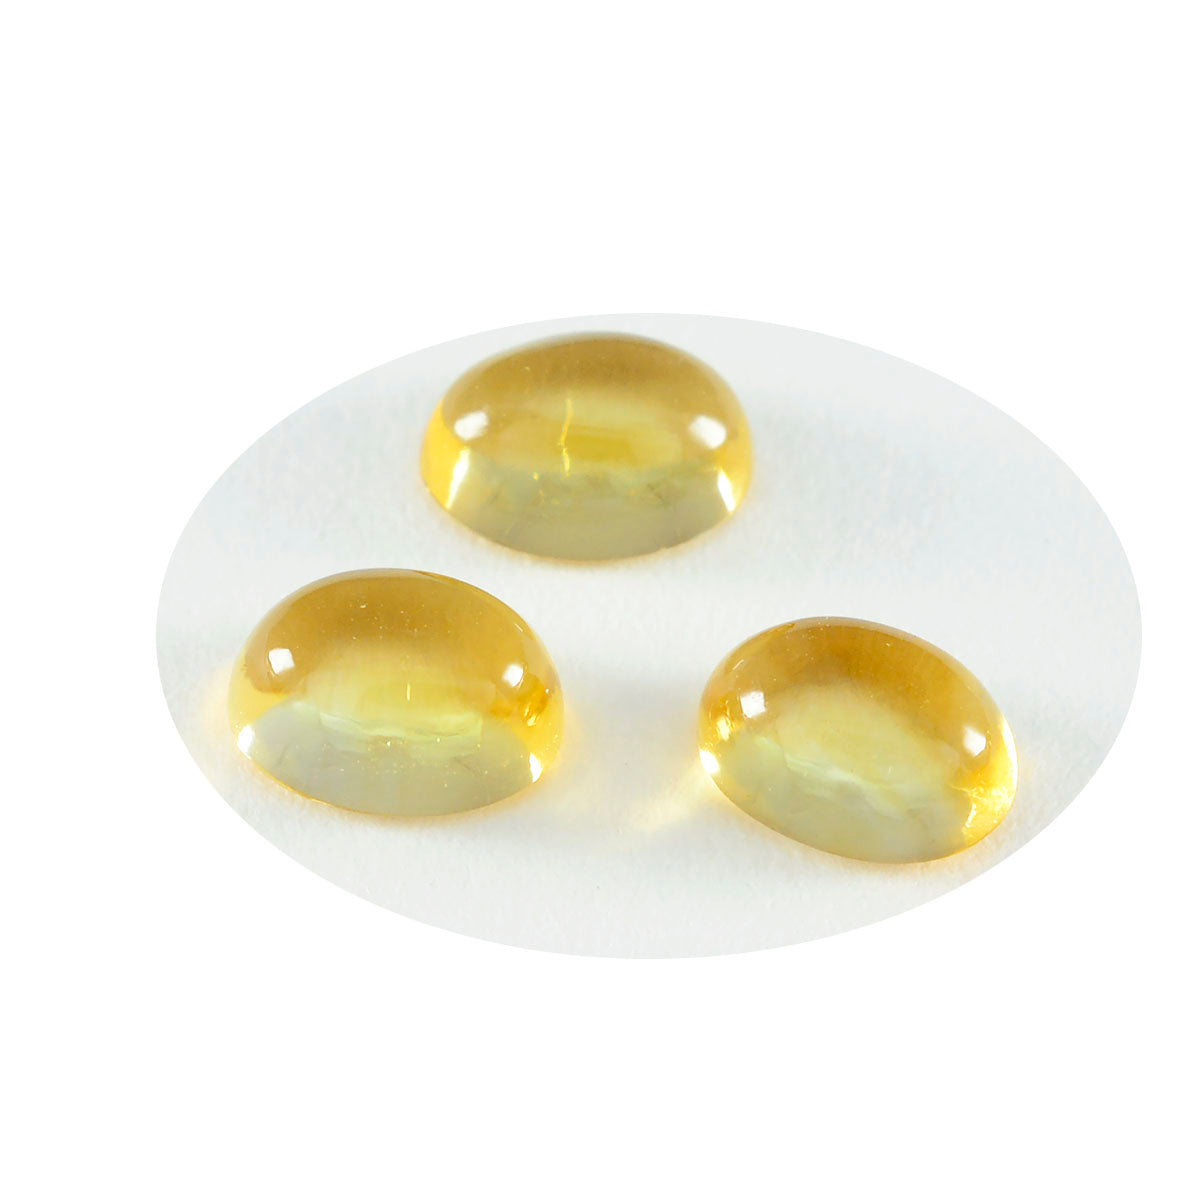 riyogems 1pc cabochon di citrino giallo 6x8 mm di forma ovale, gemma di bella qualità